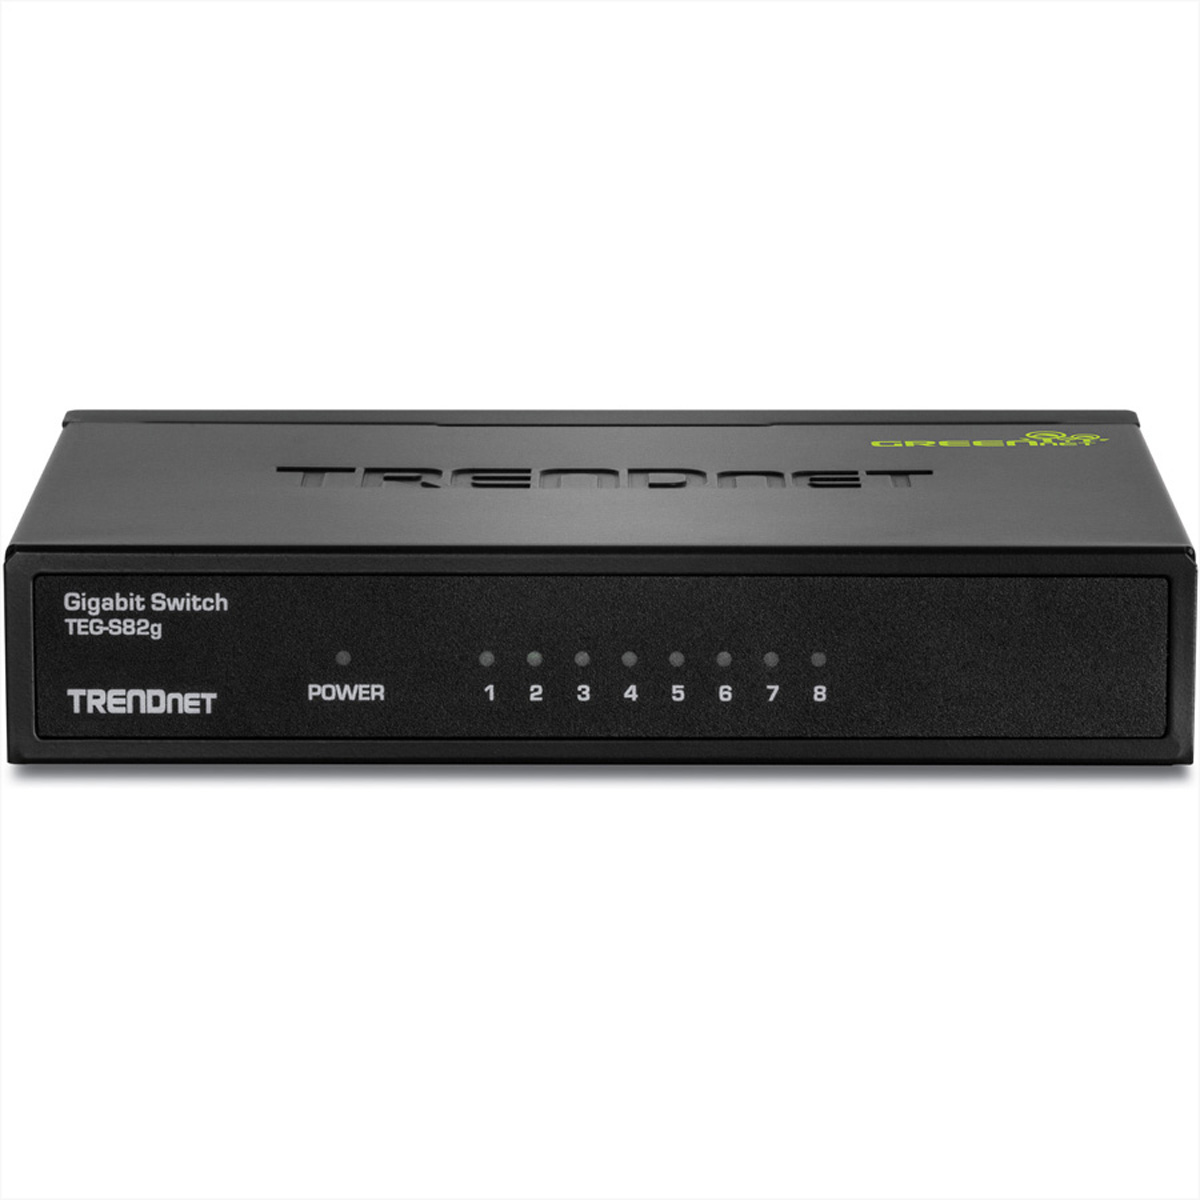 TRENDNET TEG-S82g 8-Port Gigabit GREENnet Ethernet Gigabit Switch Switch